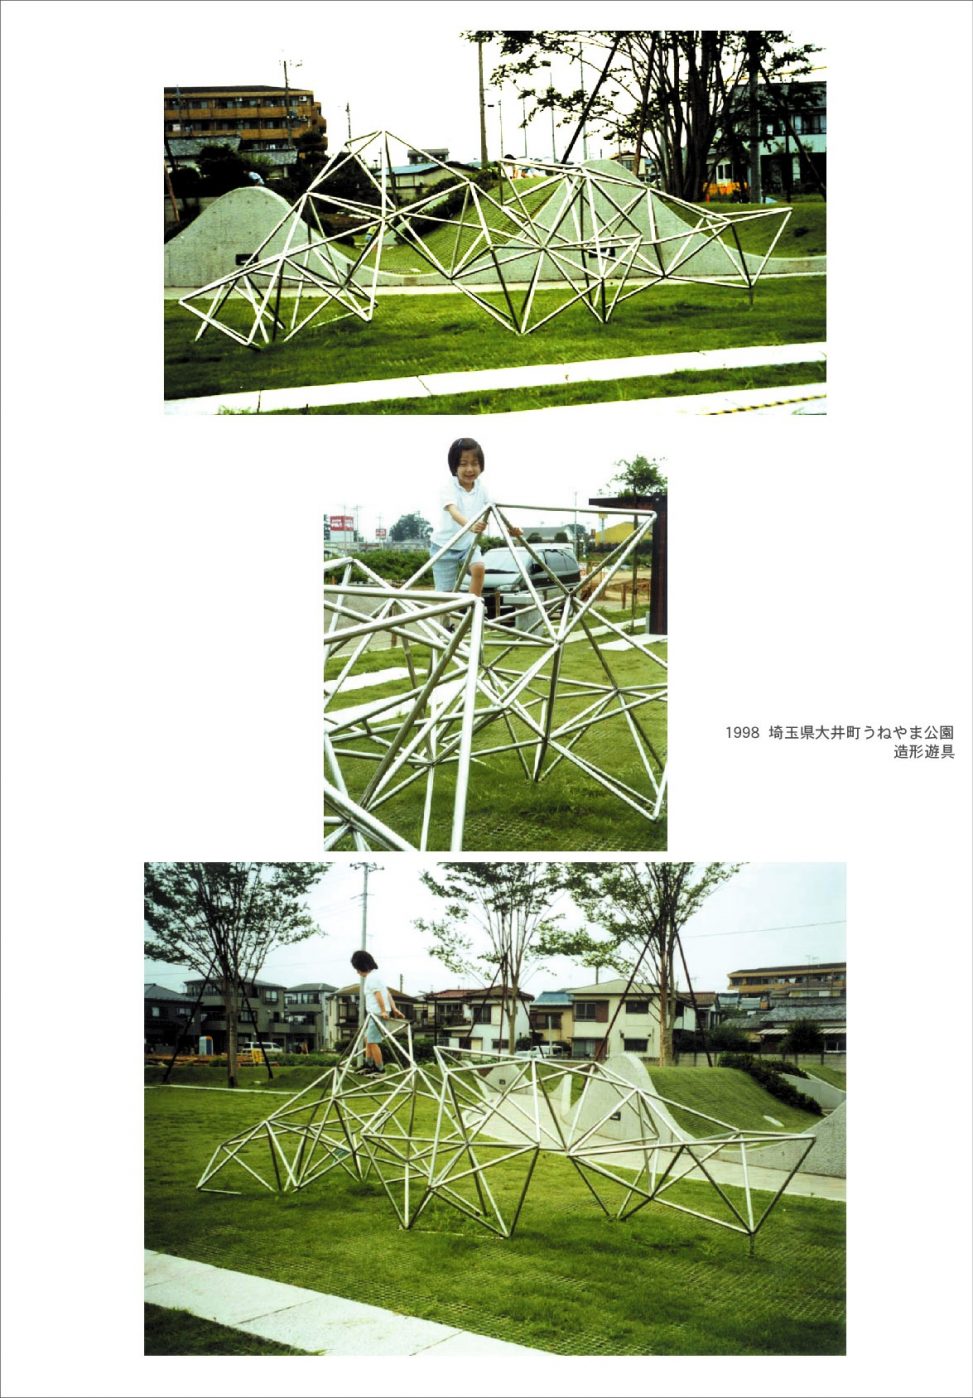 1998年 埼玉県大井町うねやま公園造形遊具